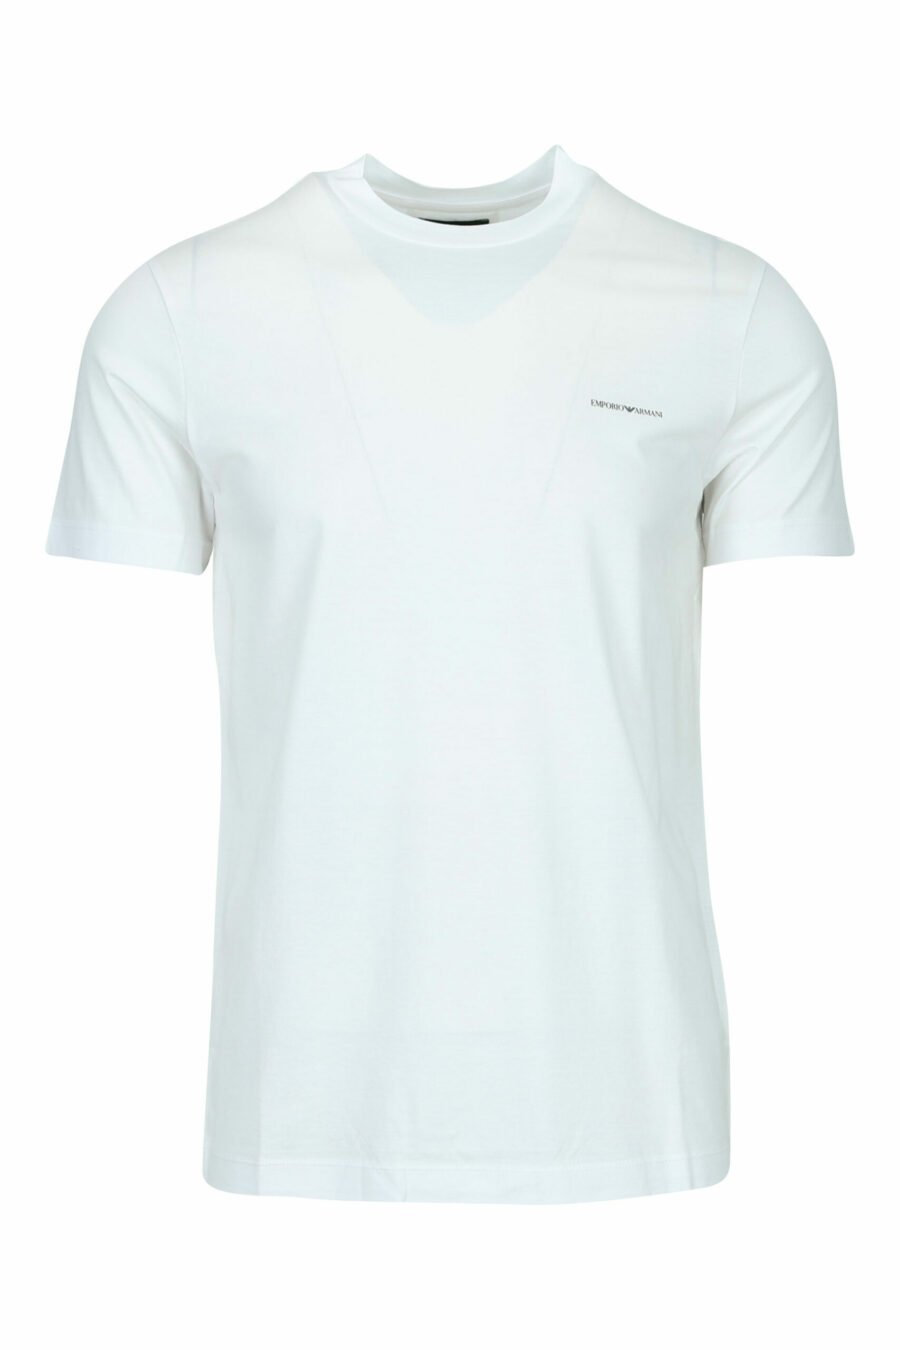 White T-shirt with minilogo "emporio" - 8059516200147 scaled